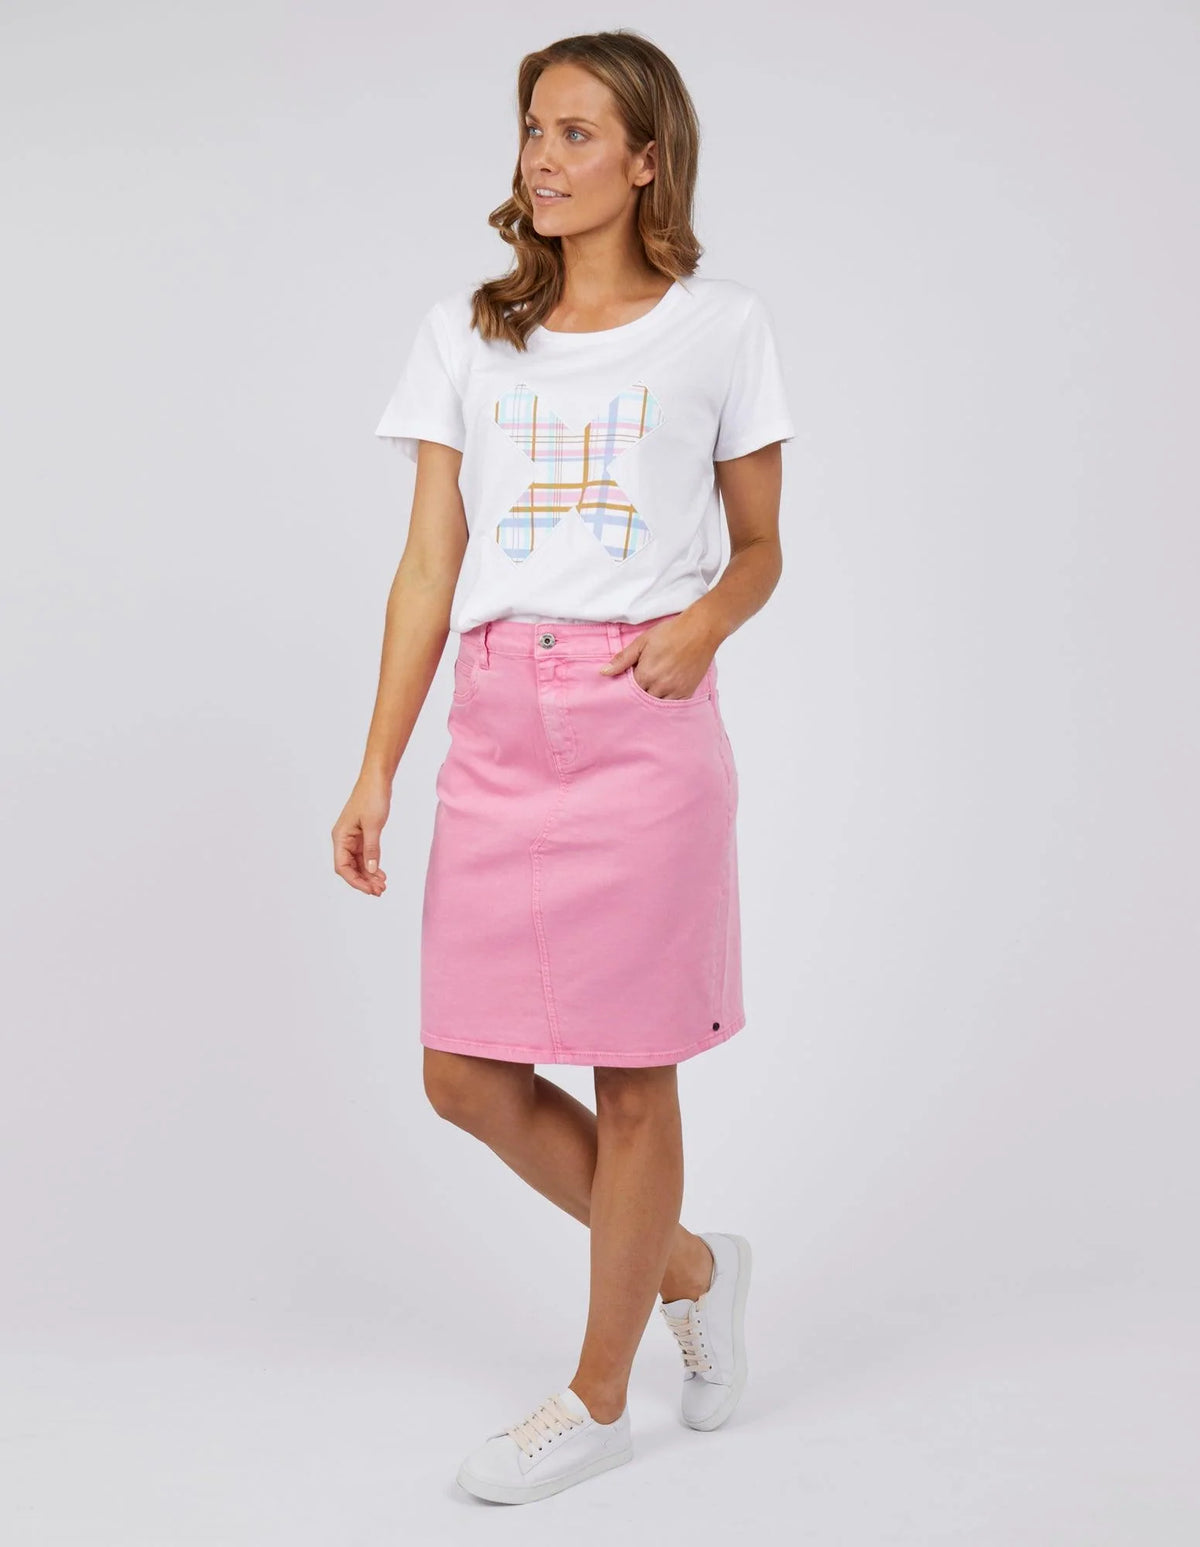 Elm Belle Denim Skirt - Sherbert Pink